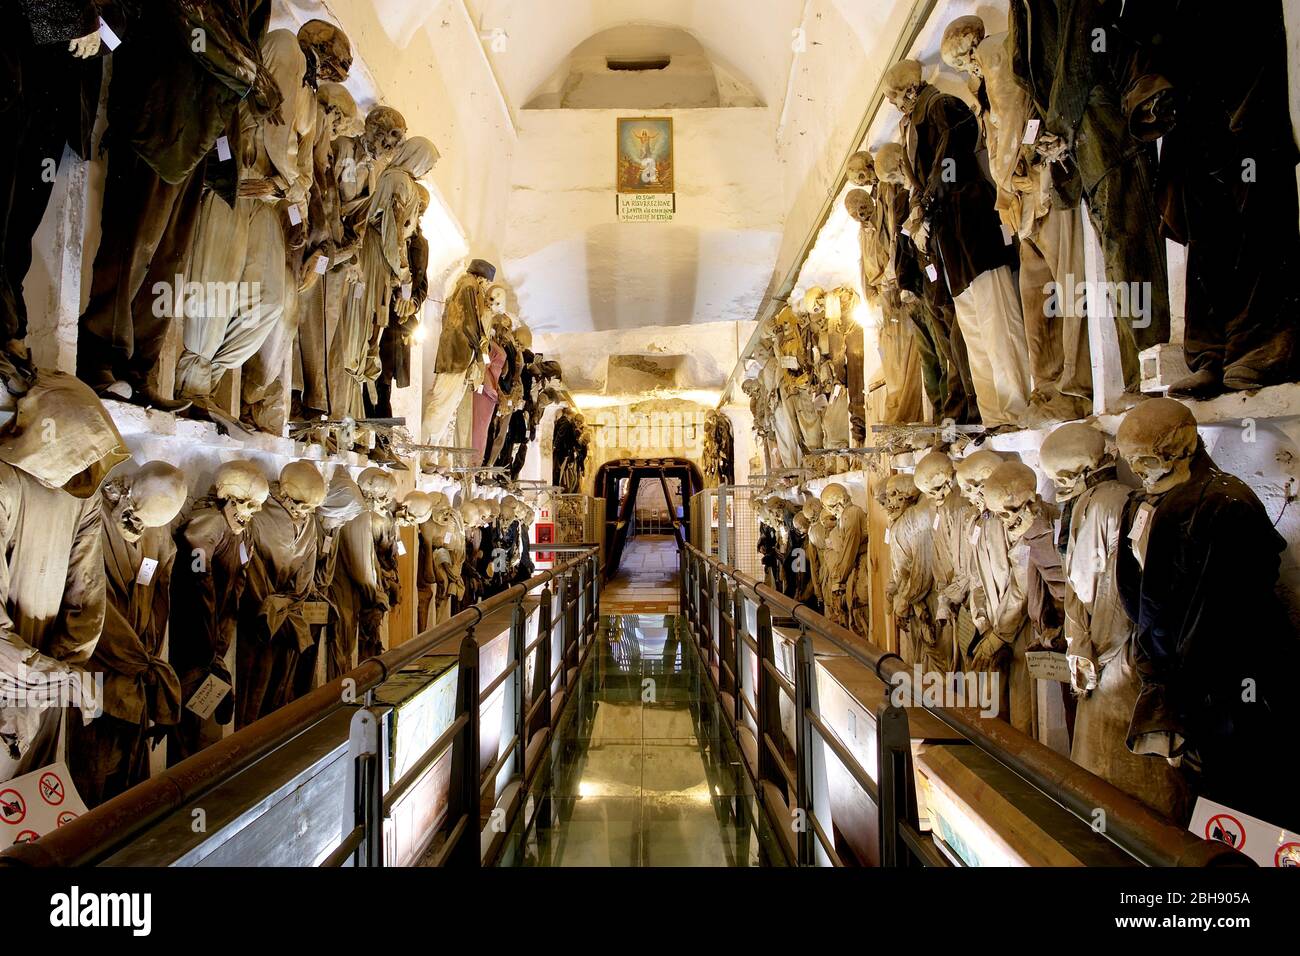 Palerme, vieille ville, monastère de Capuchin, tombe, momies, couloir plein de momies suspendues et clothées dans deux étages Banque D'Images